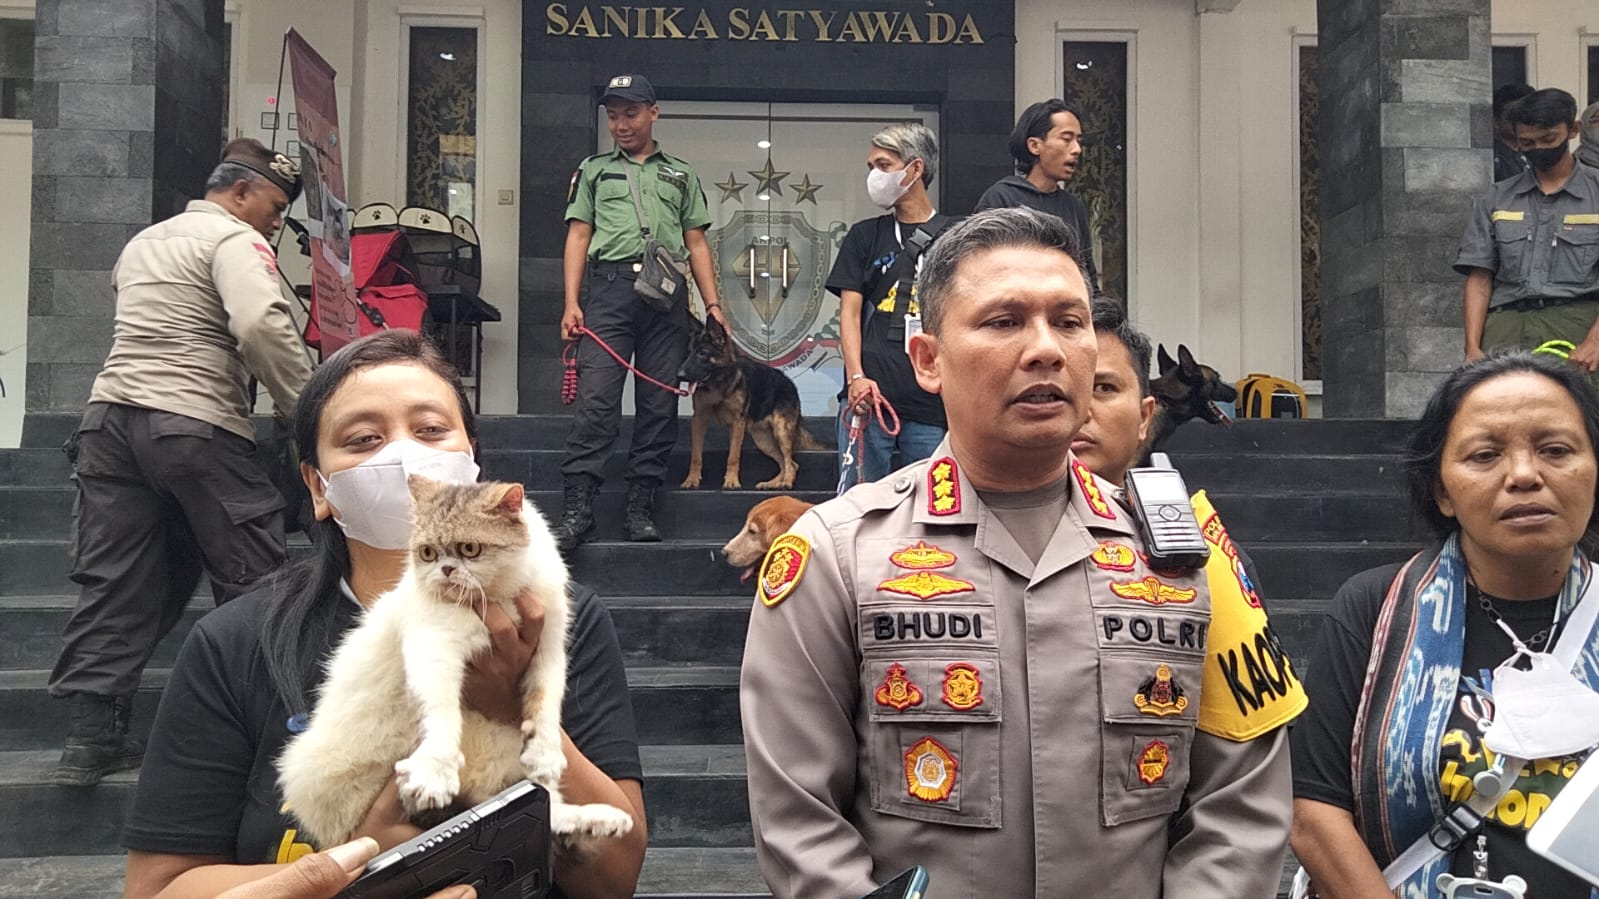 Kapolresta Malang Kota, Kombes Pol Budi Hermanto bersama Komunitas Pecinta Hewan memberikan keterangan kepada wartawan